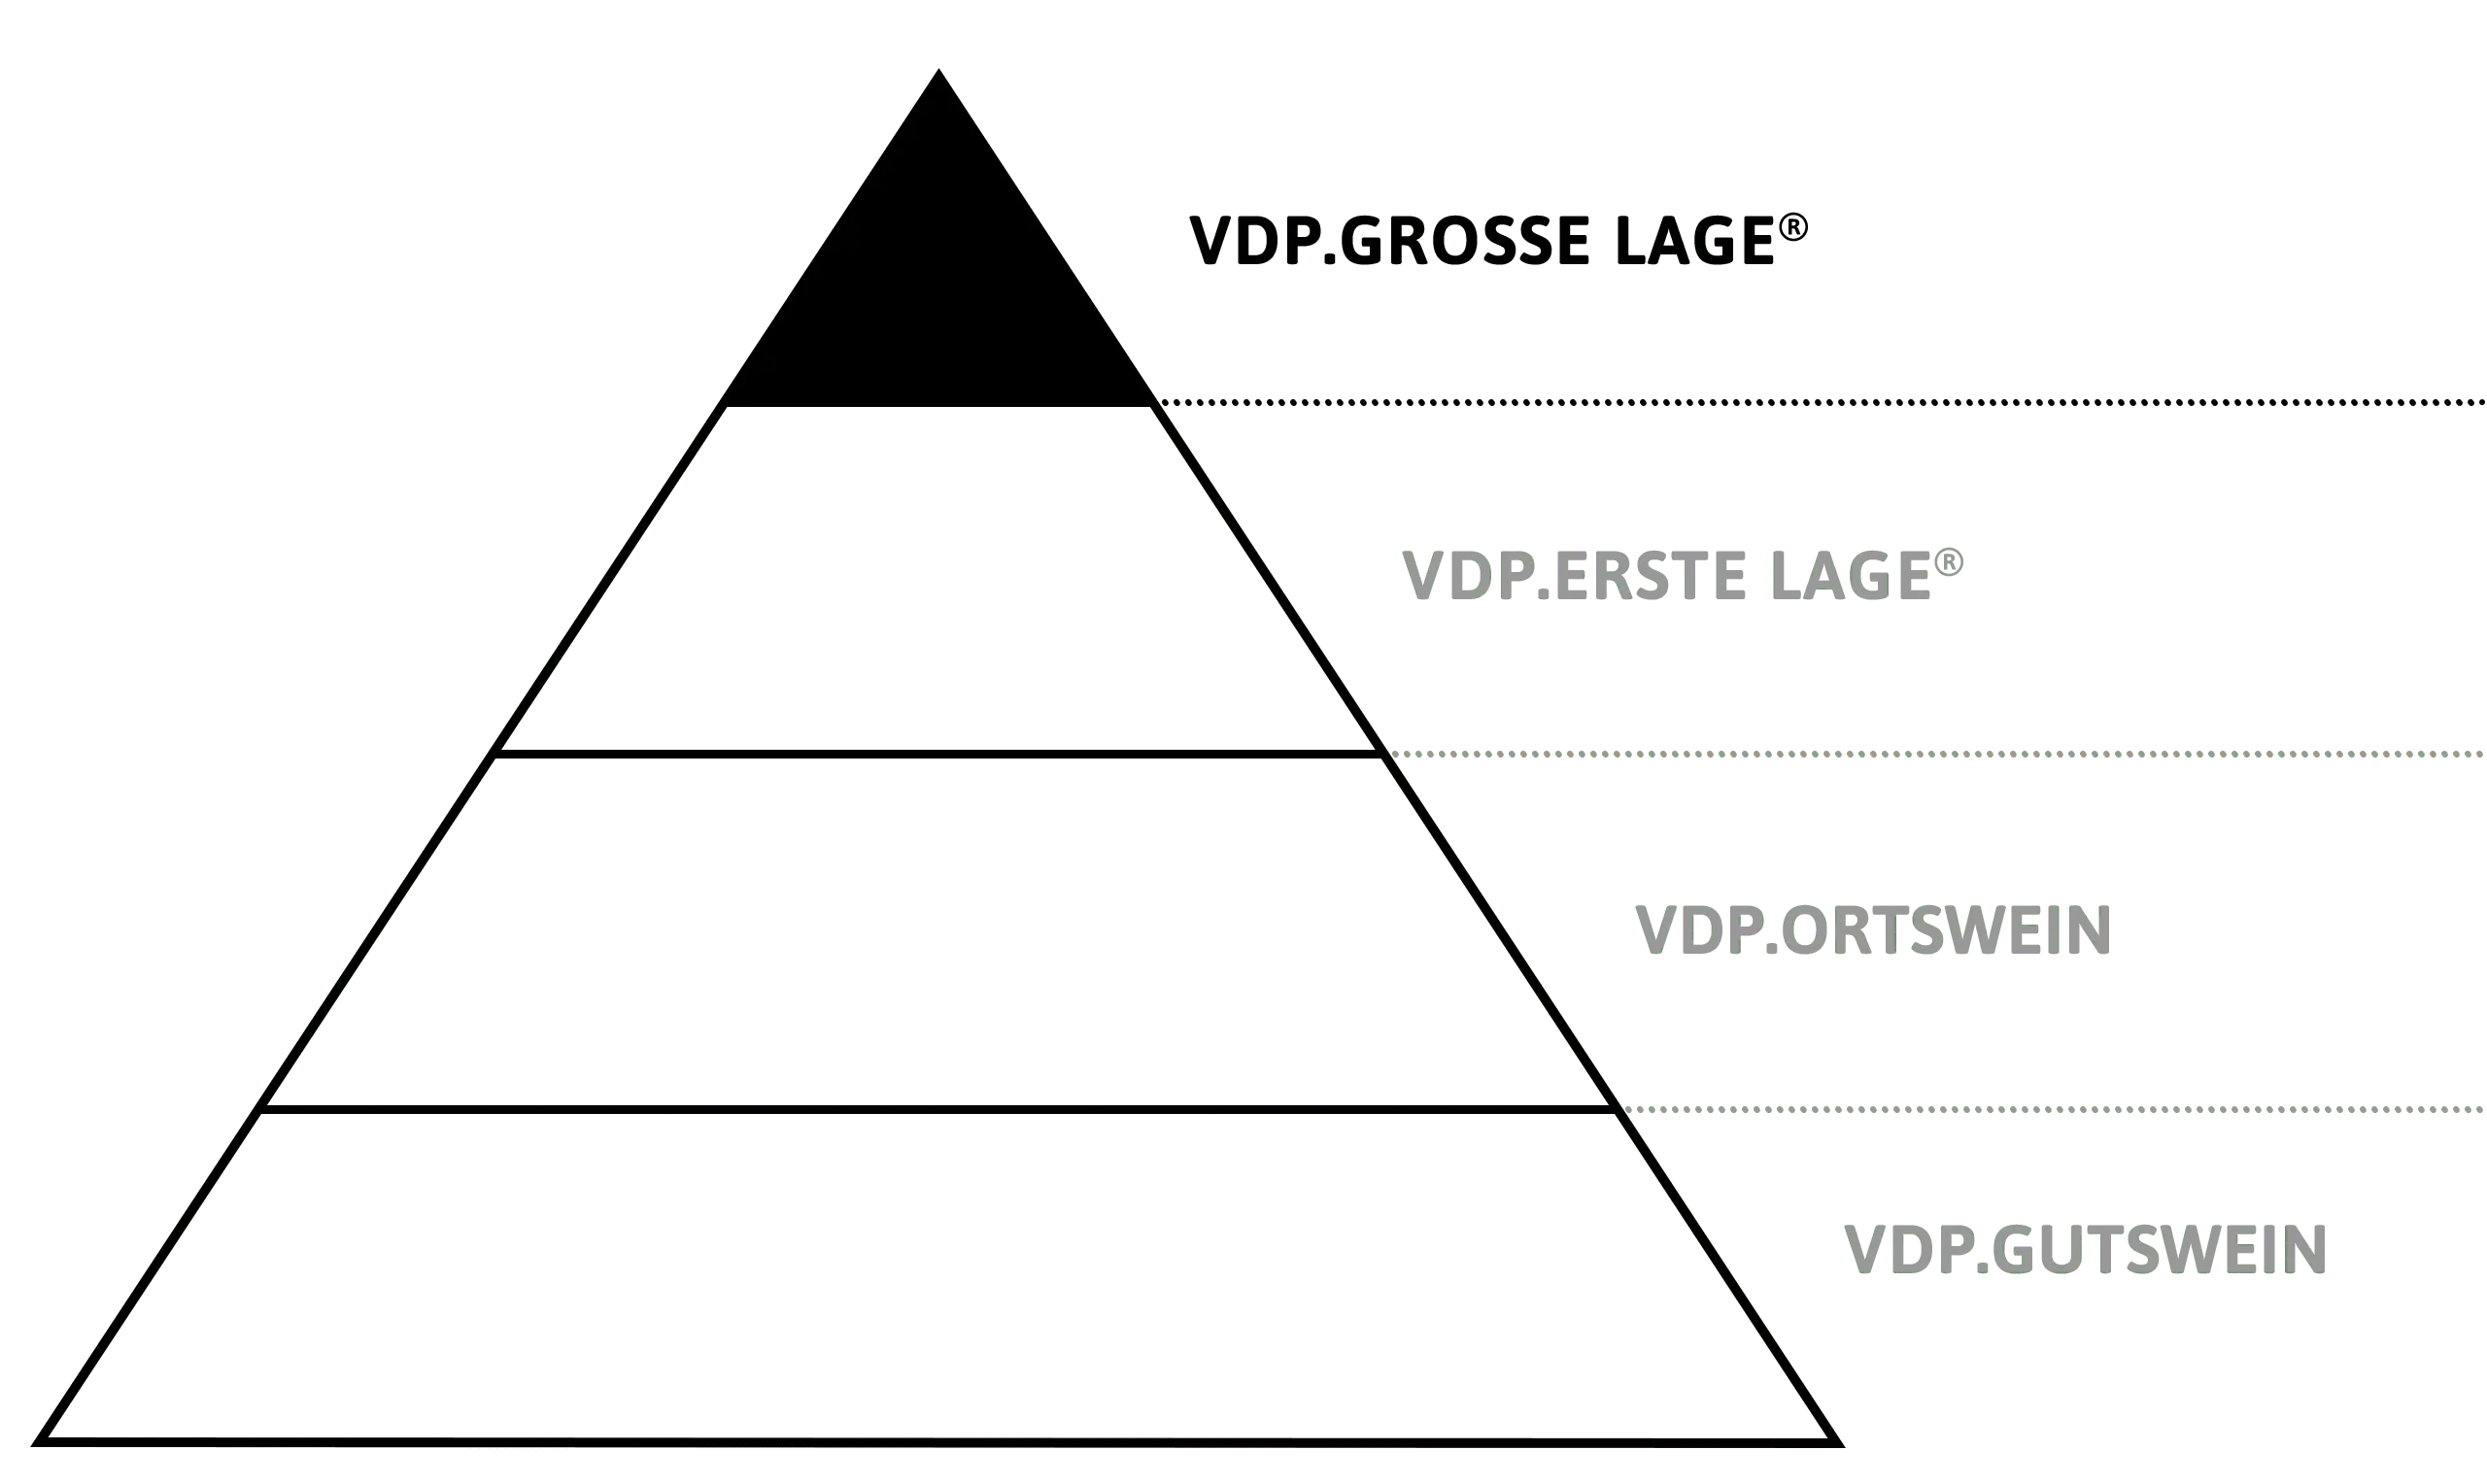 VDP Klassifikations-Pyramide VDP.GROSSE LAGE